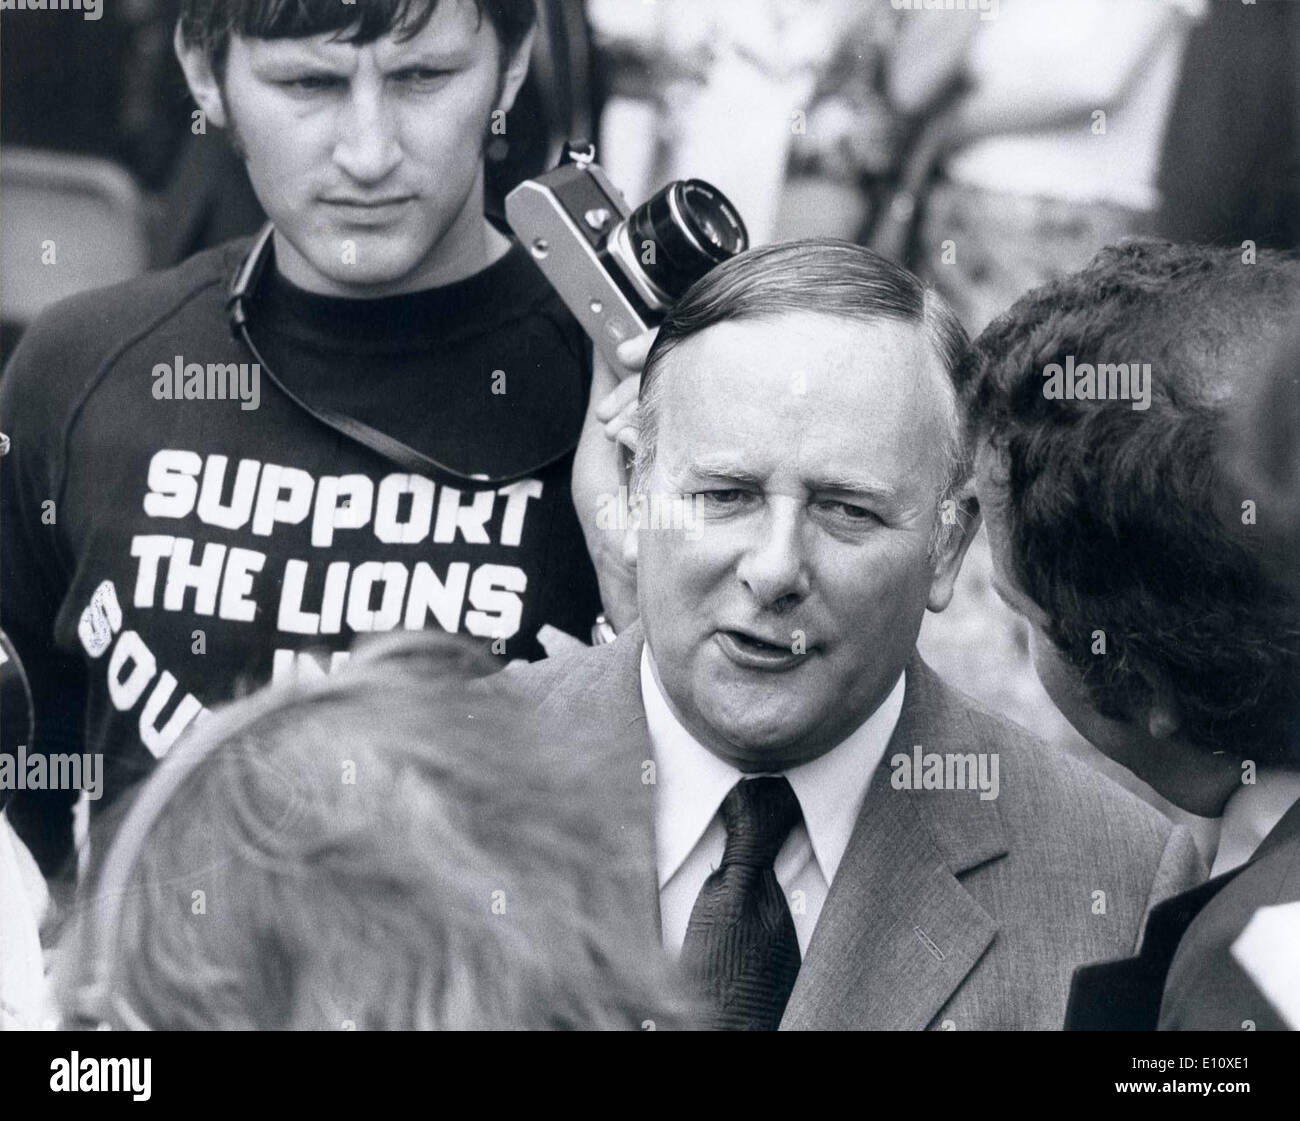 Jul 30, 1974 - Londres, Angleterre, Royaume-Uni - Le ministre des Sports DENIS HOWELL ont accueilli l'équipe de rugby des Lions britanniques lors de leur arrivée à l'aéroport d'Heathrow à partir de leur tournée de l'Afrique du Sud où ils ont remporté 21 des 22 matchs. Howell est interviewé par les journalistes à l'hôtel Excelsior. Banque D'Images